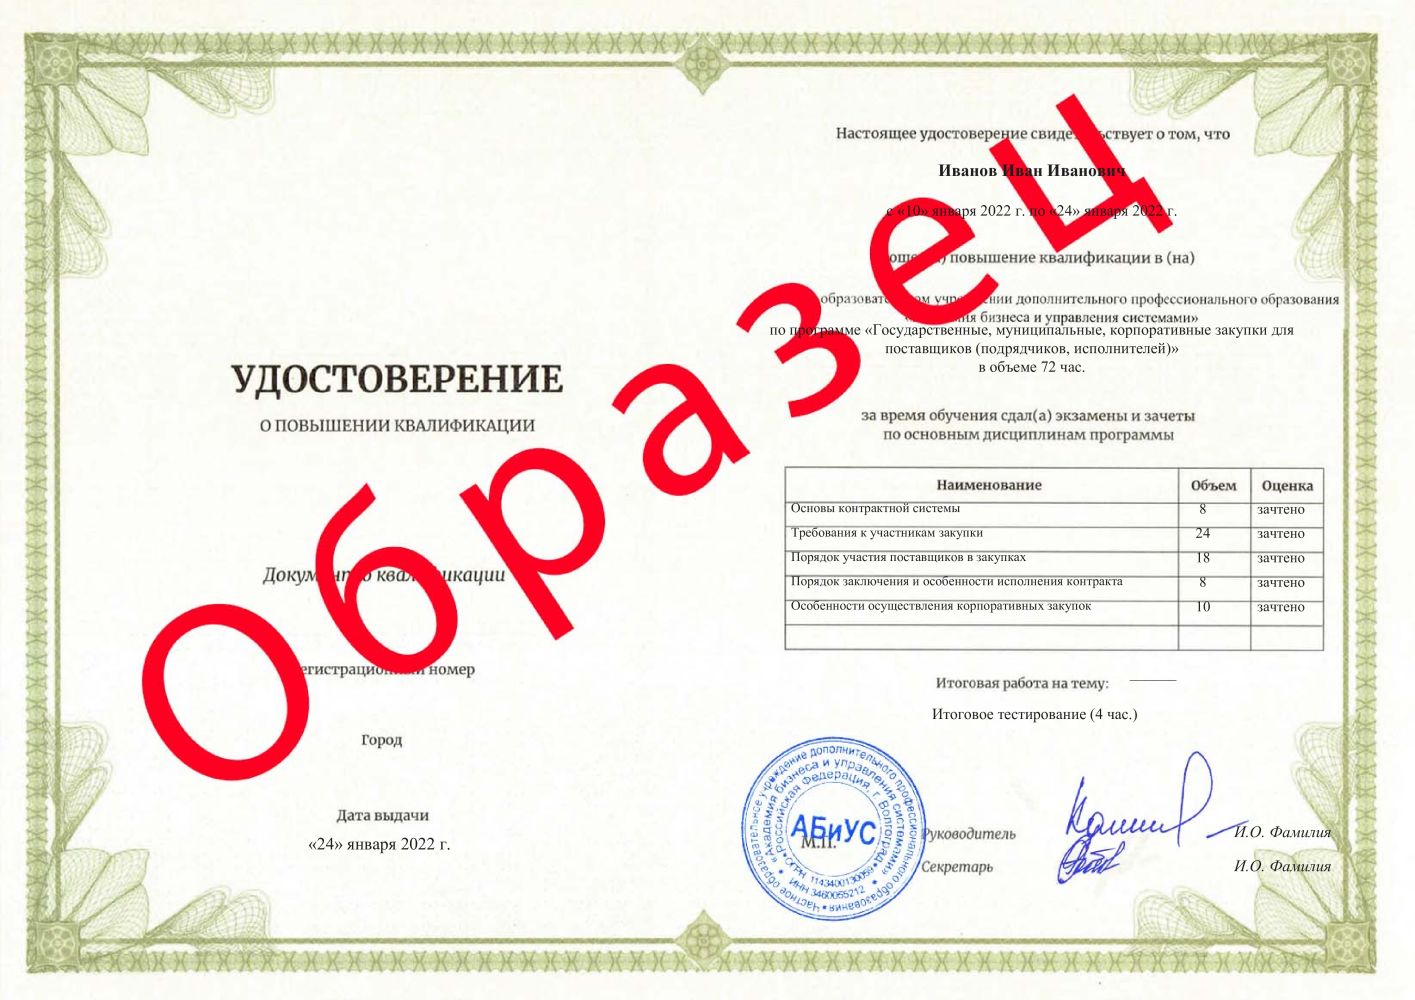 Удостоверение Государственные, муниципальные, корпоративные закупки для поставщиков (подрядчиков, исполнителей) 72 часа 6125 руб.